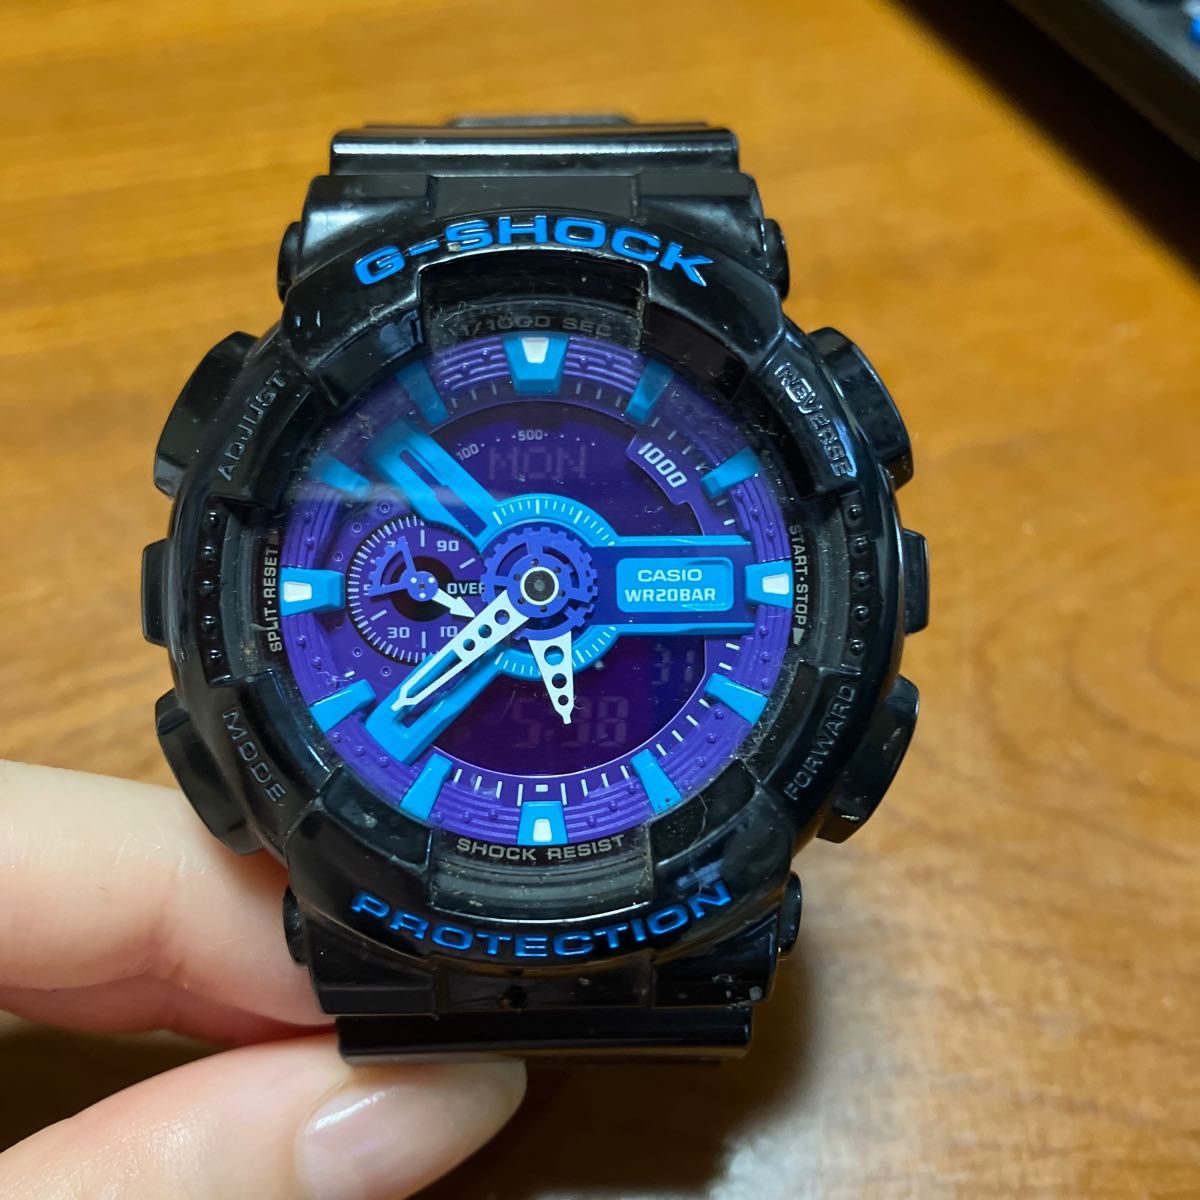 レア Gショック 非売品 ドリカム×ポカリGSHOCK腕時計 白×青 29500円